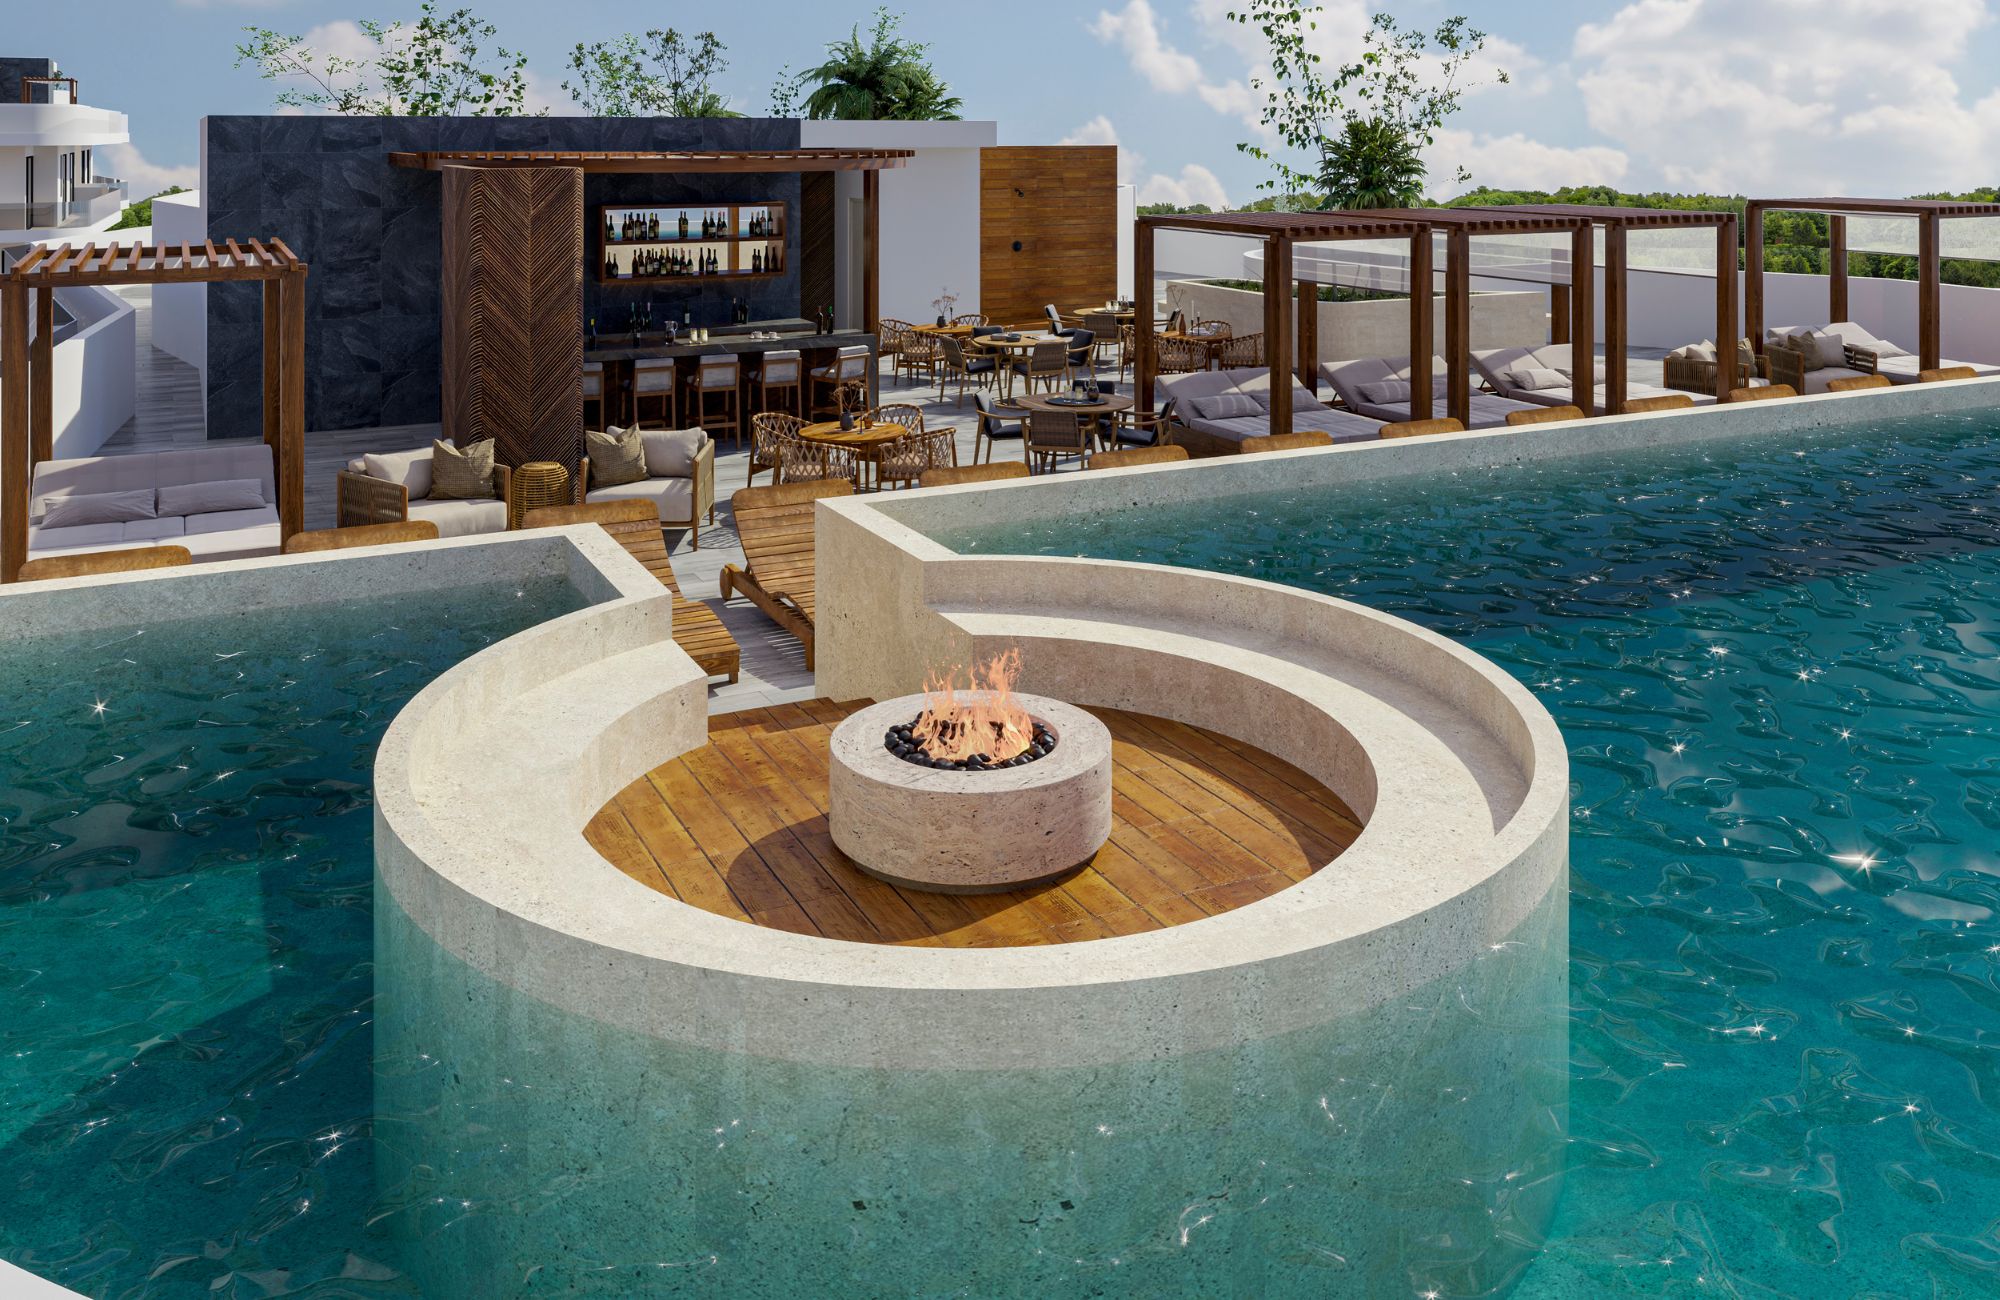 Condominio con Club de playa frente al mar, Alberca, Spa, y business Center, en  Costa mujeres, Cancun.